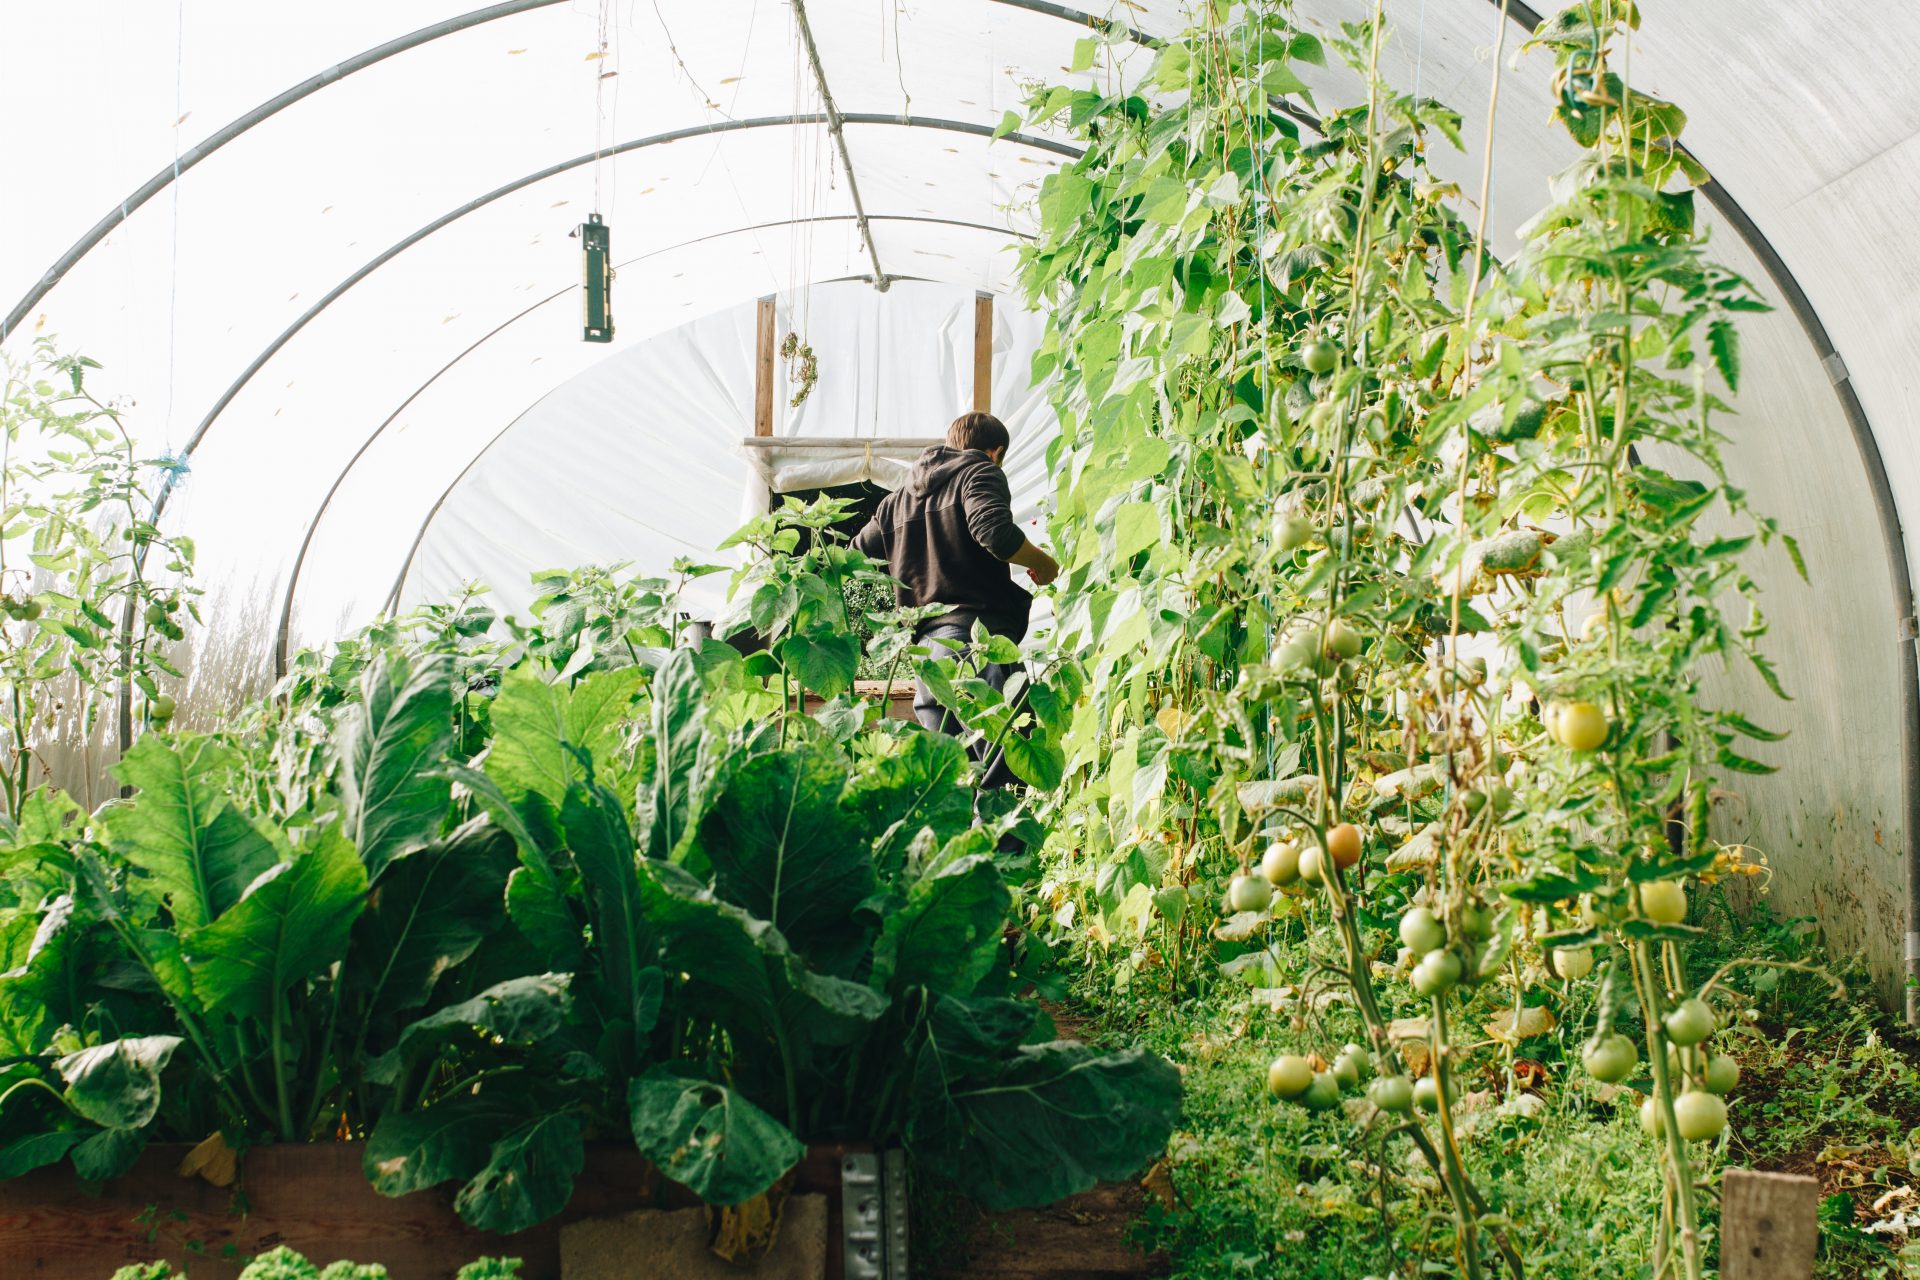 Un hombre está de espaldas a la cámara en un invernadero lleno de plantas verdes y mira al suelo.